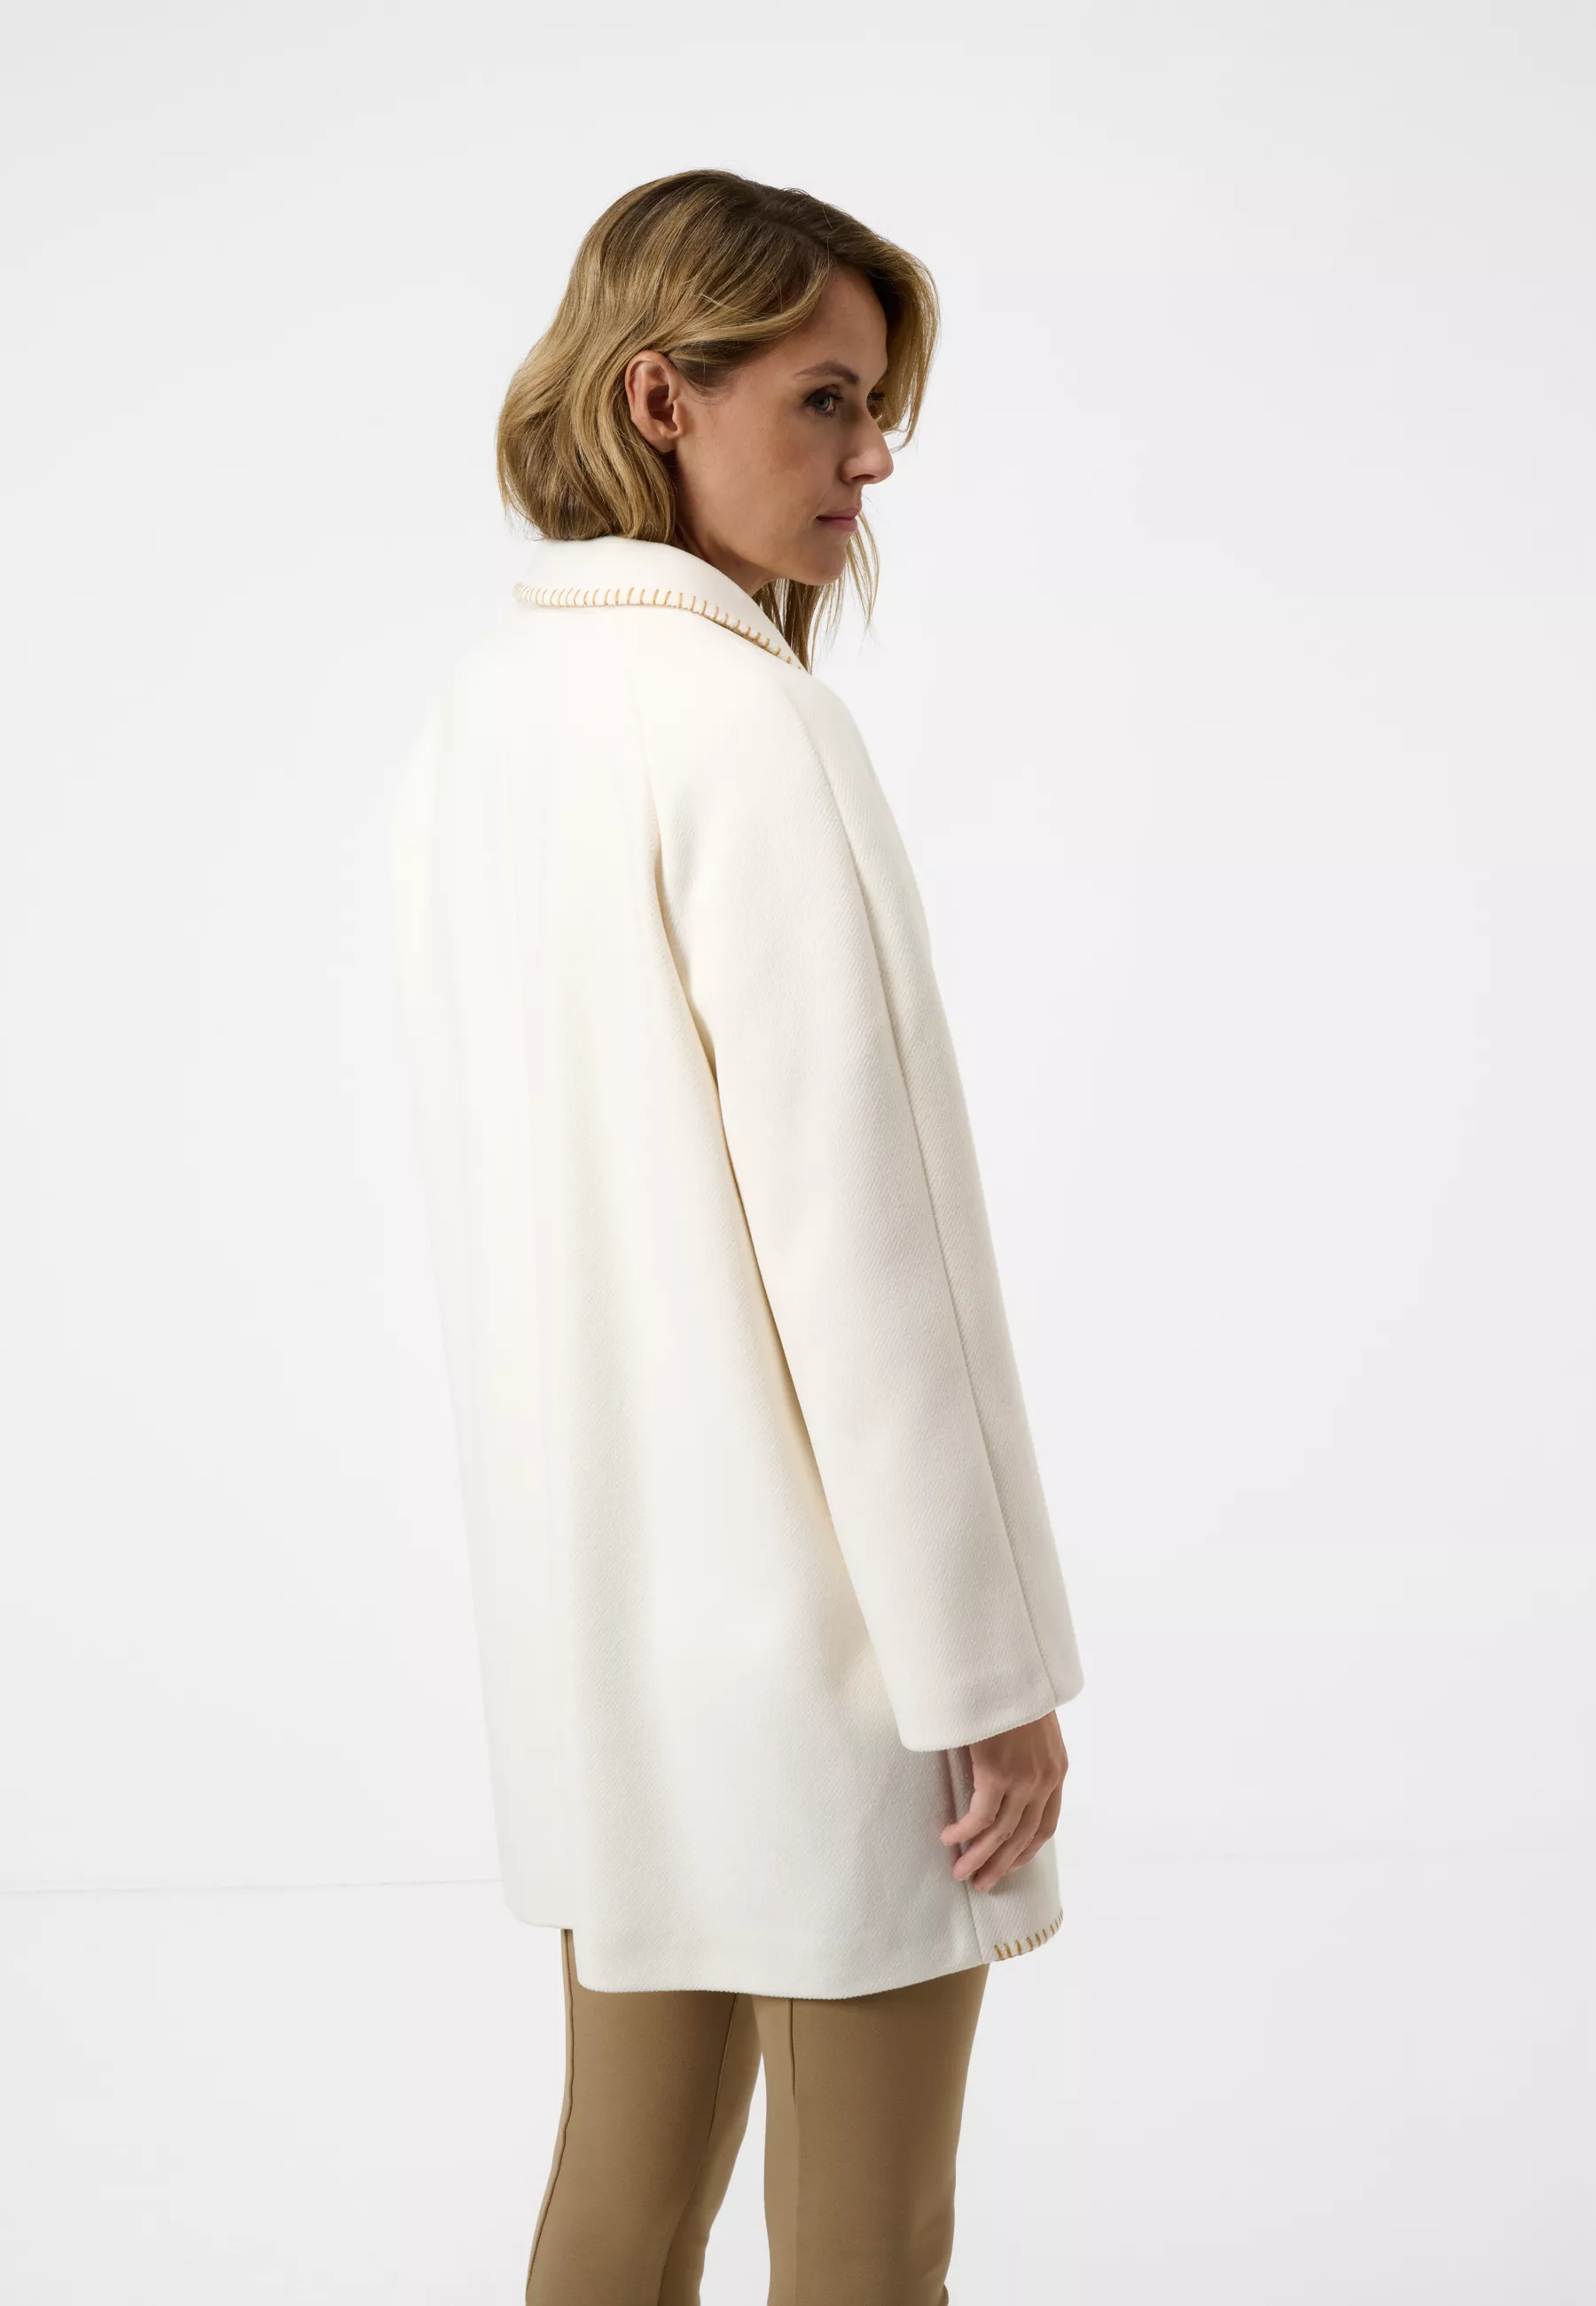 Damen Textil Mantel Silvia in Weiß von Ricano, Rückansicht am Model